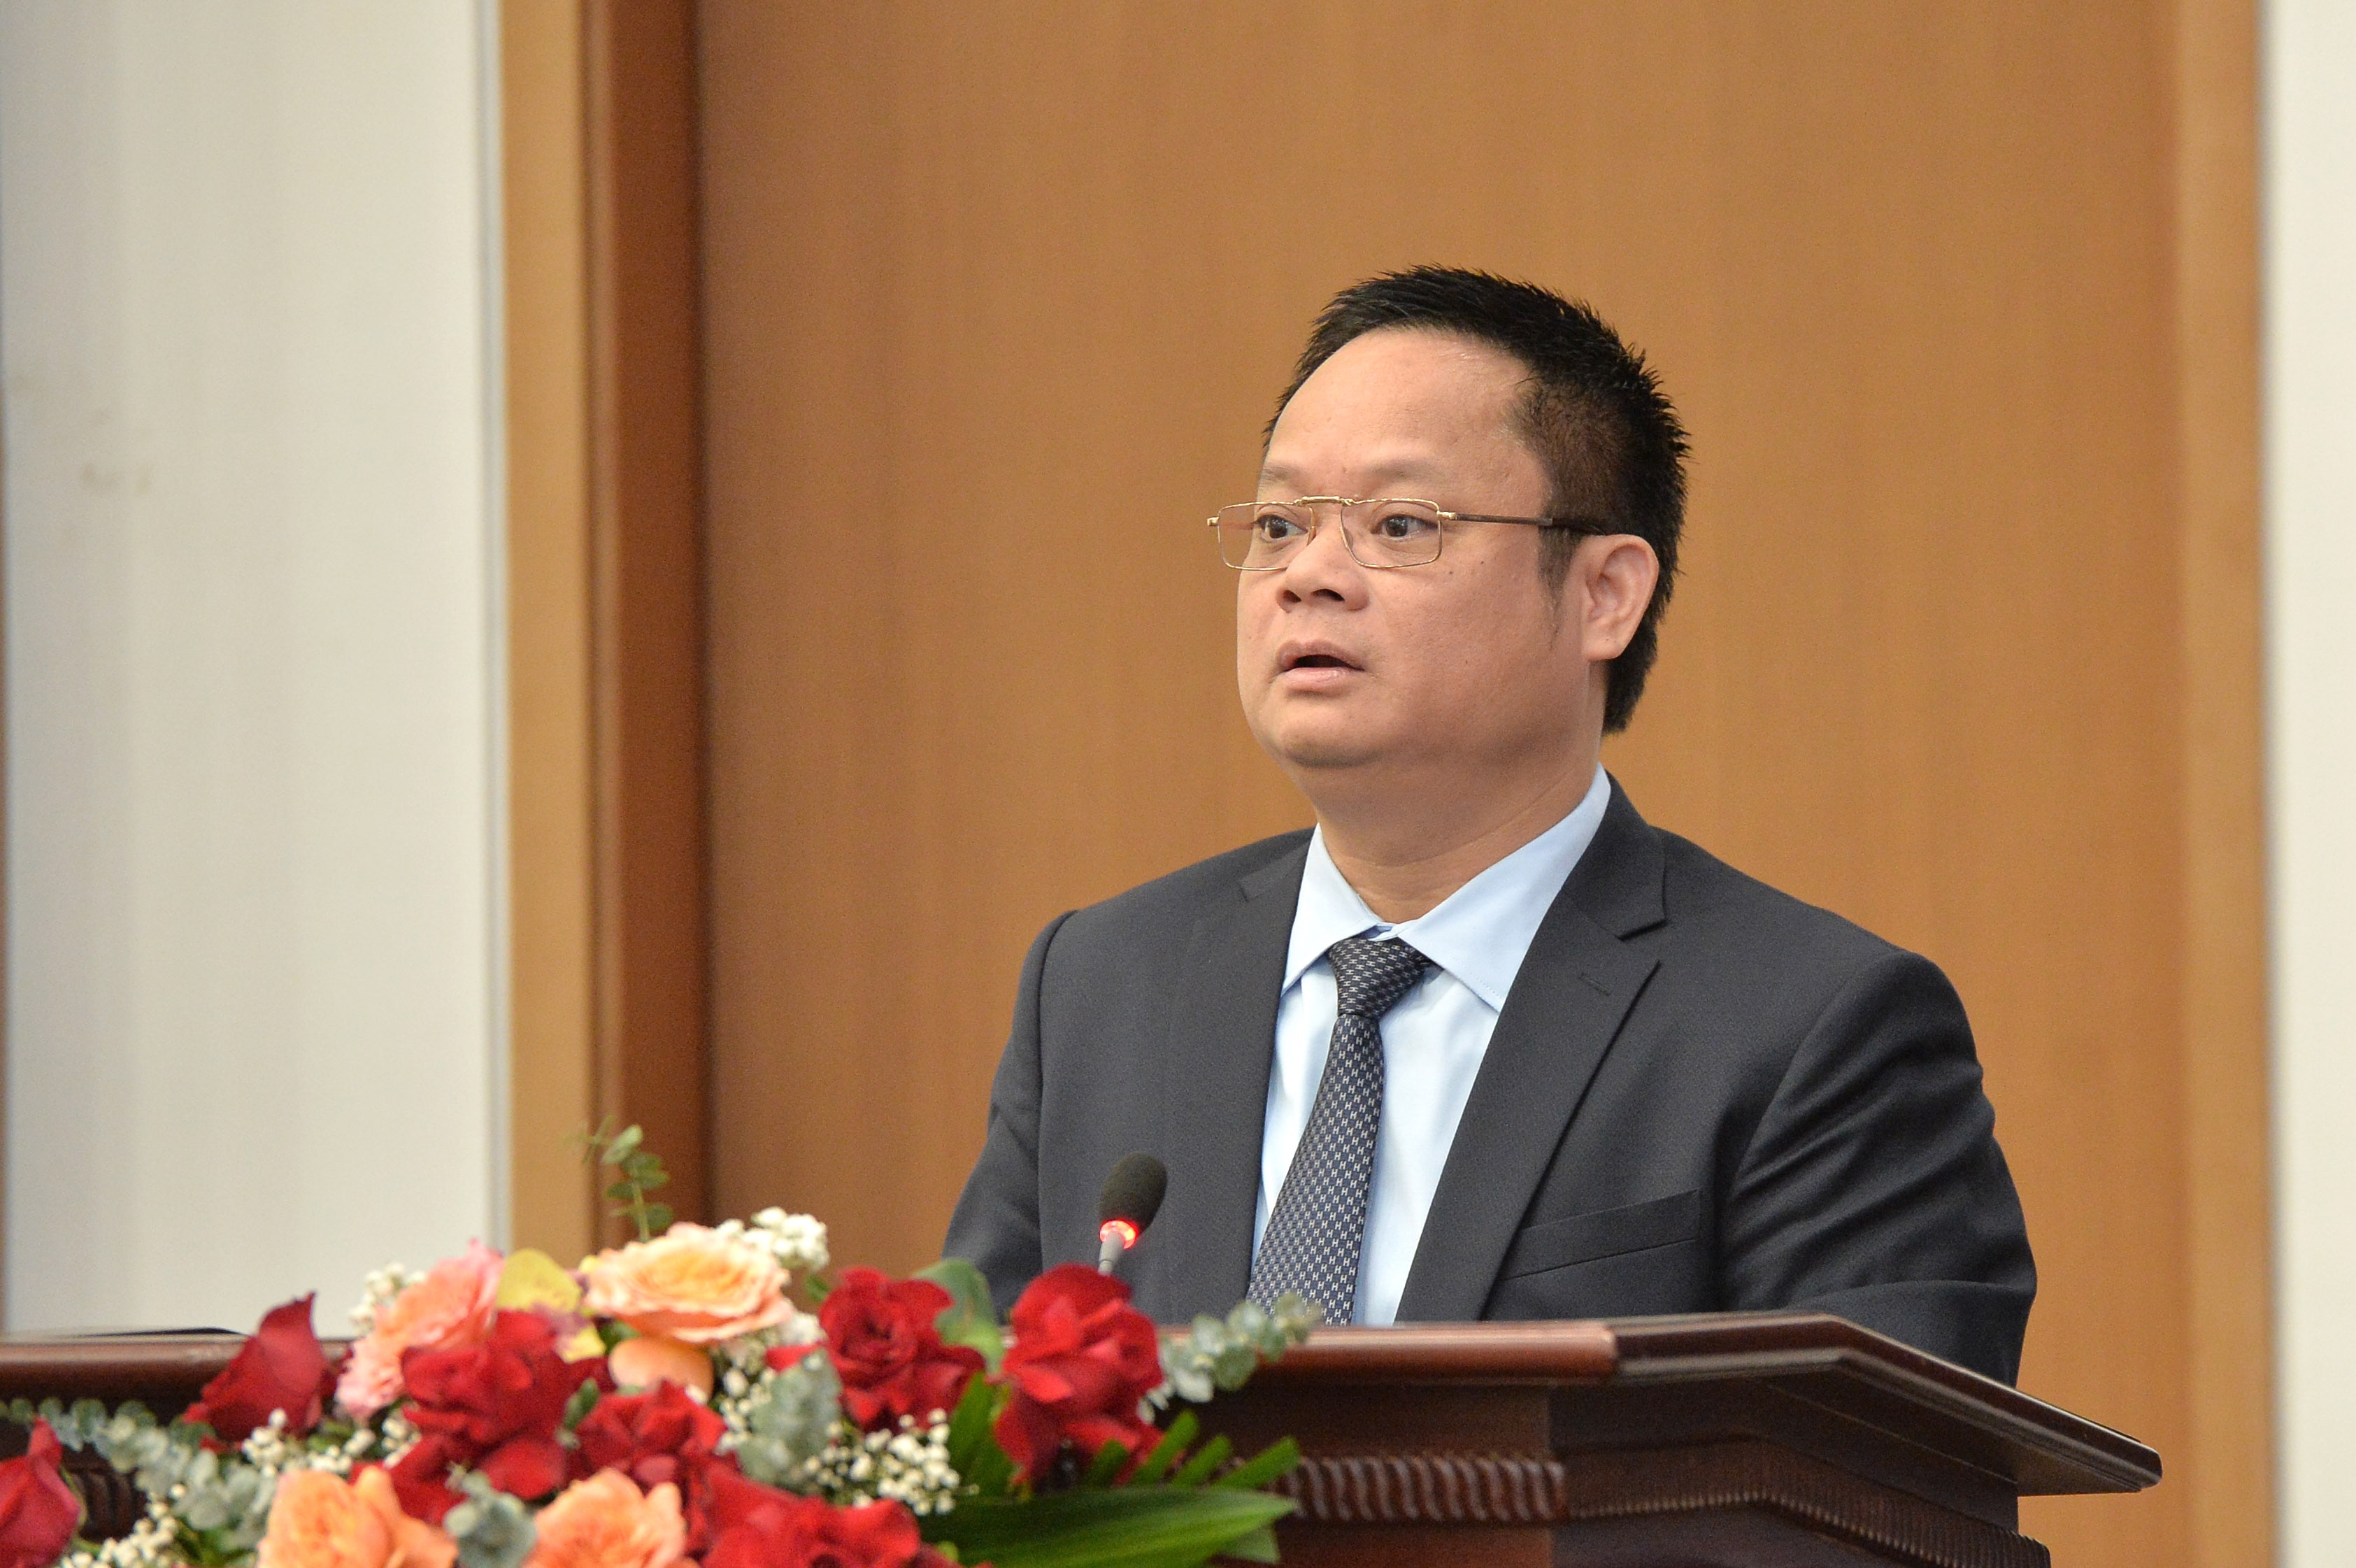 Tổng Thư ký Quốc hội Bùi Văn Cường chủ trì họp báo công bố kết quả Kỳ họp thứ Bảy, Quốc hội khoá XV -2